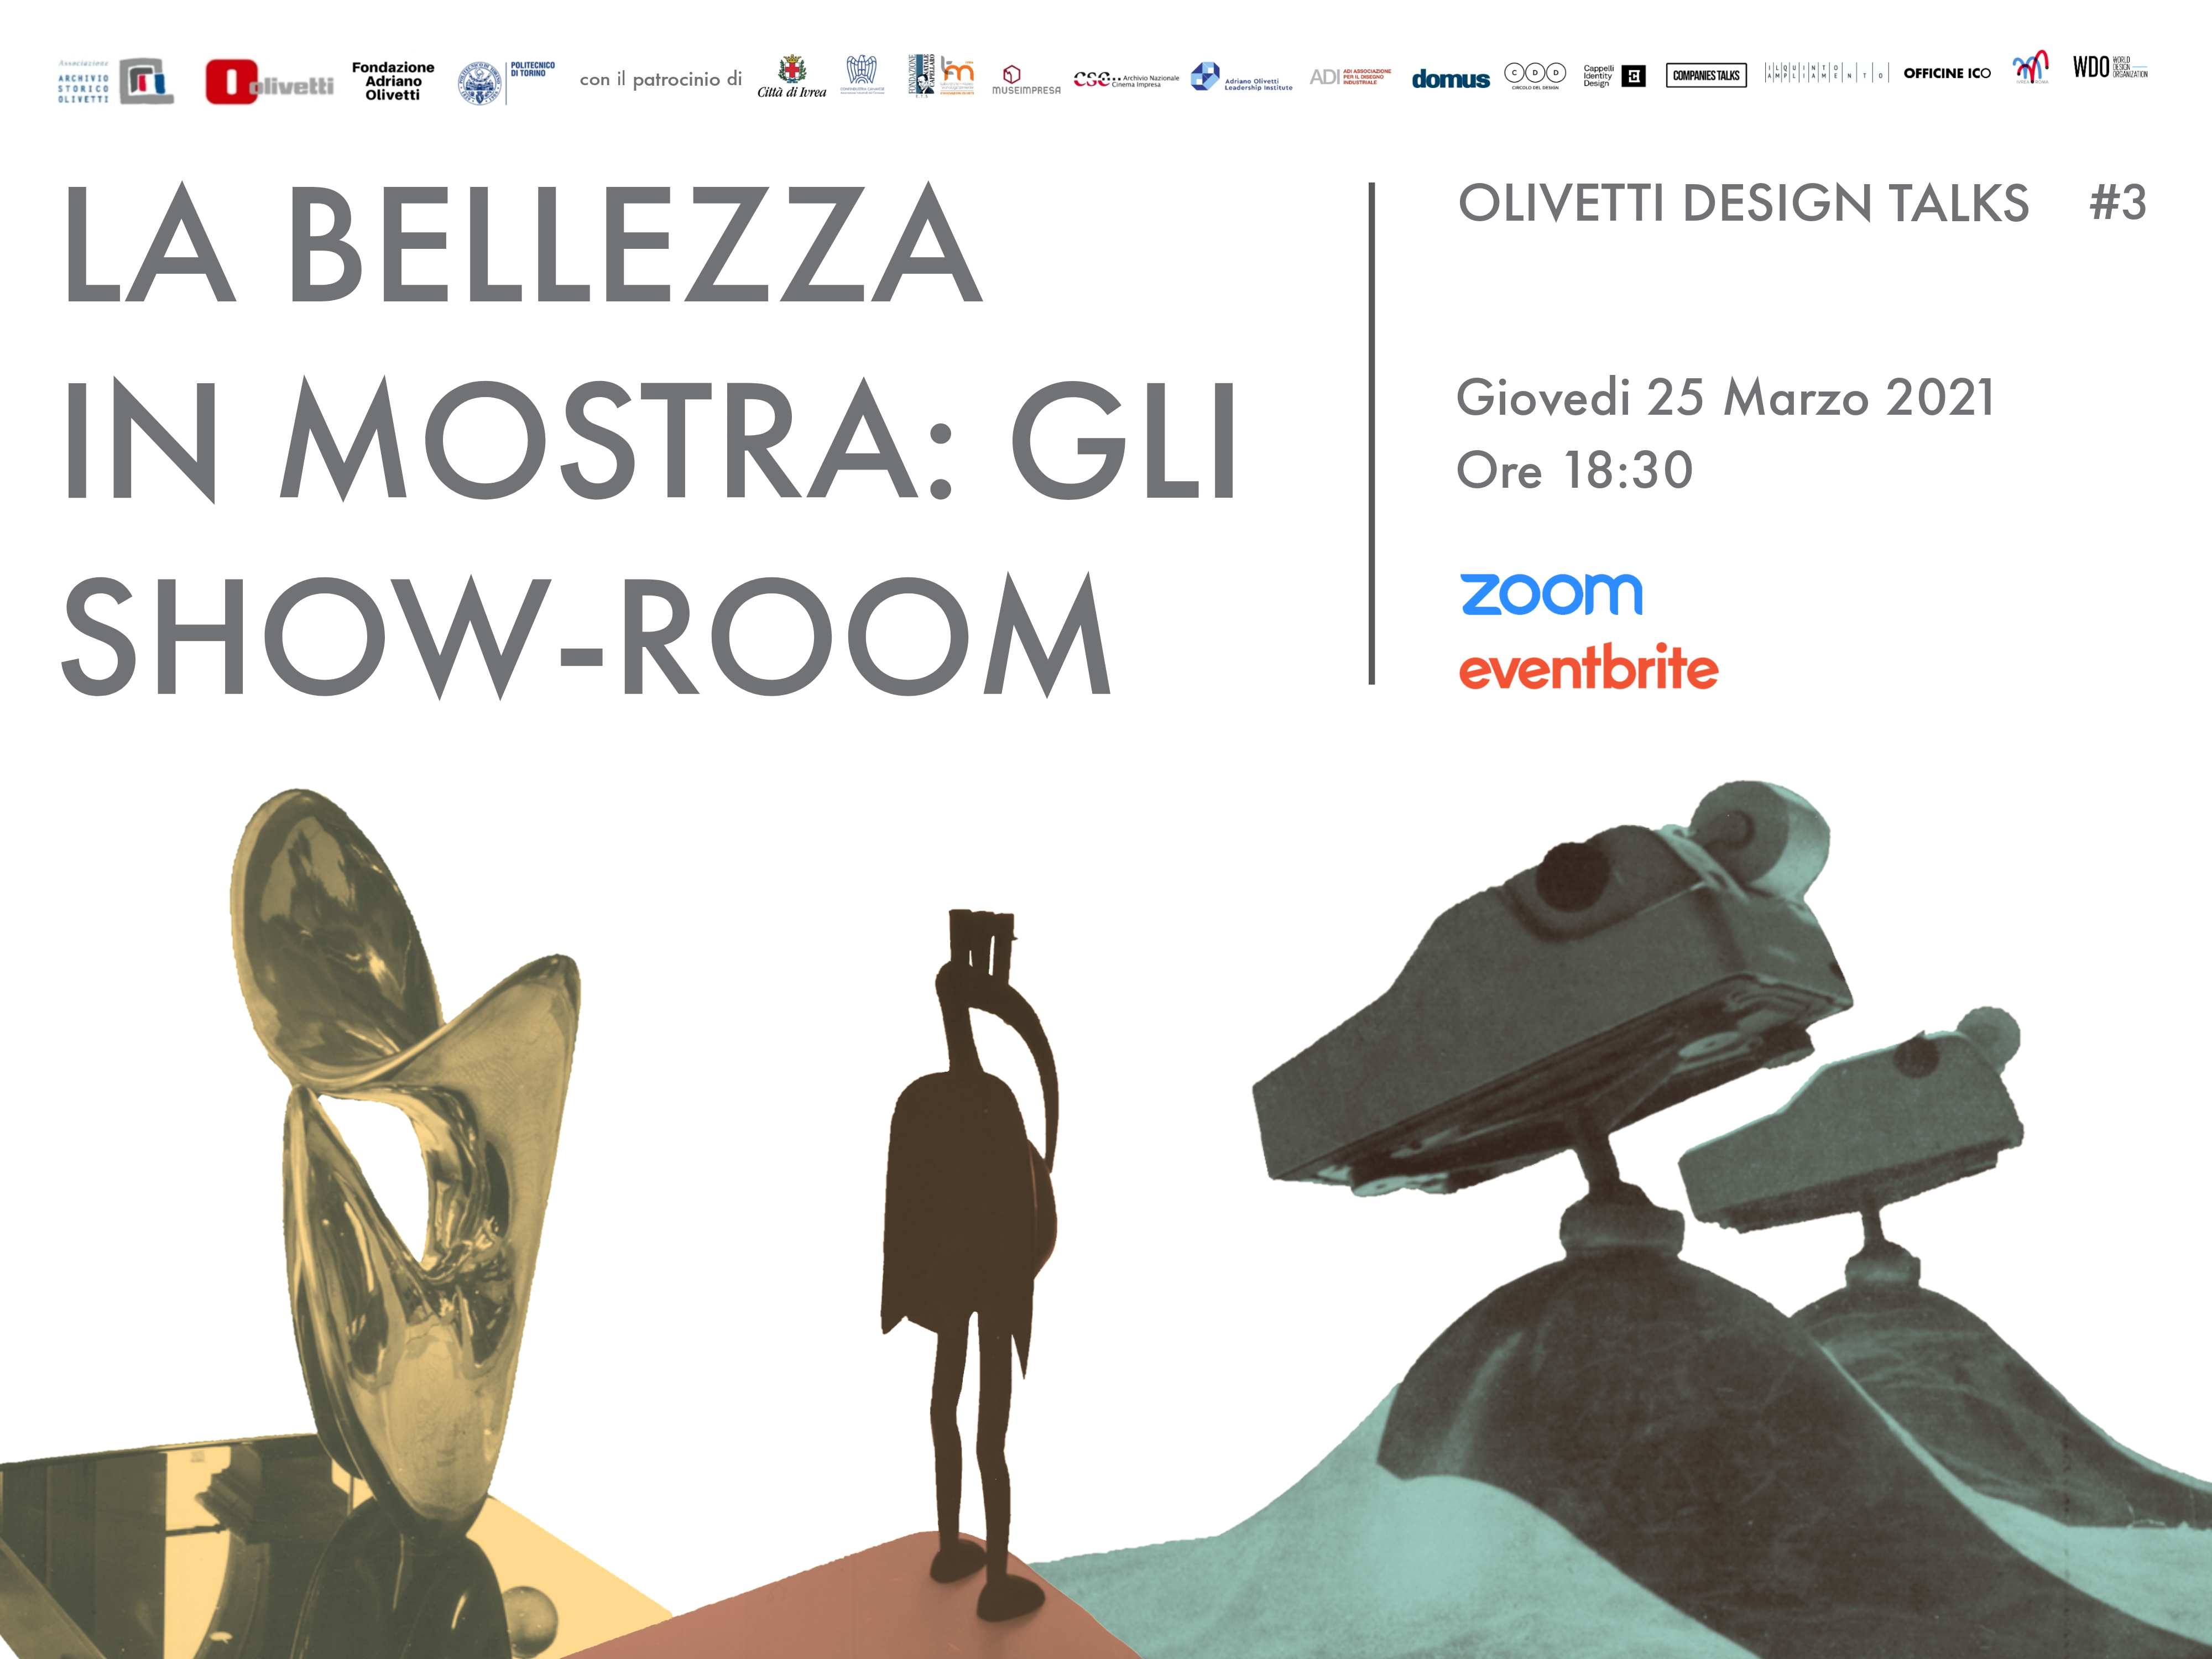 La bellezza in mostra: gli showroom Olivetti